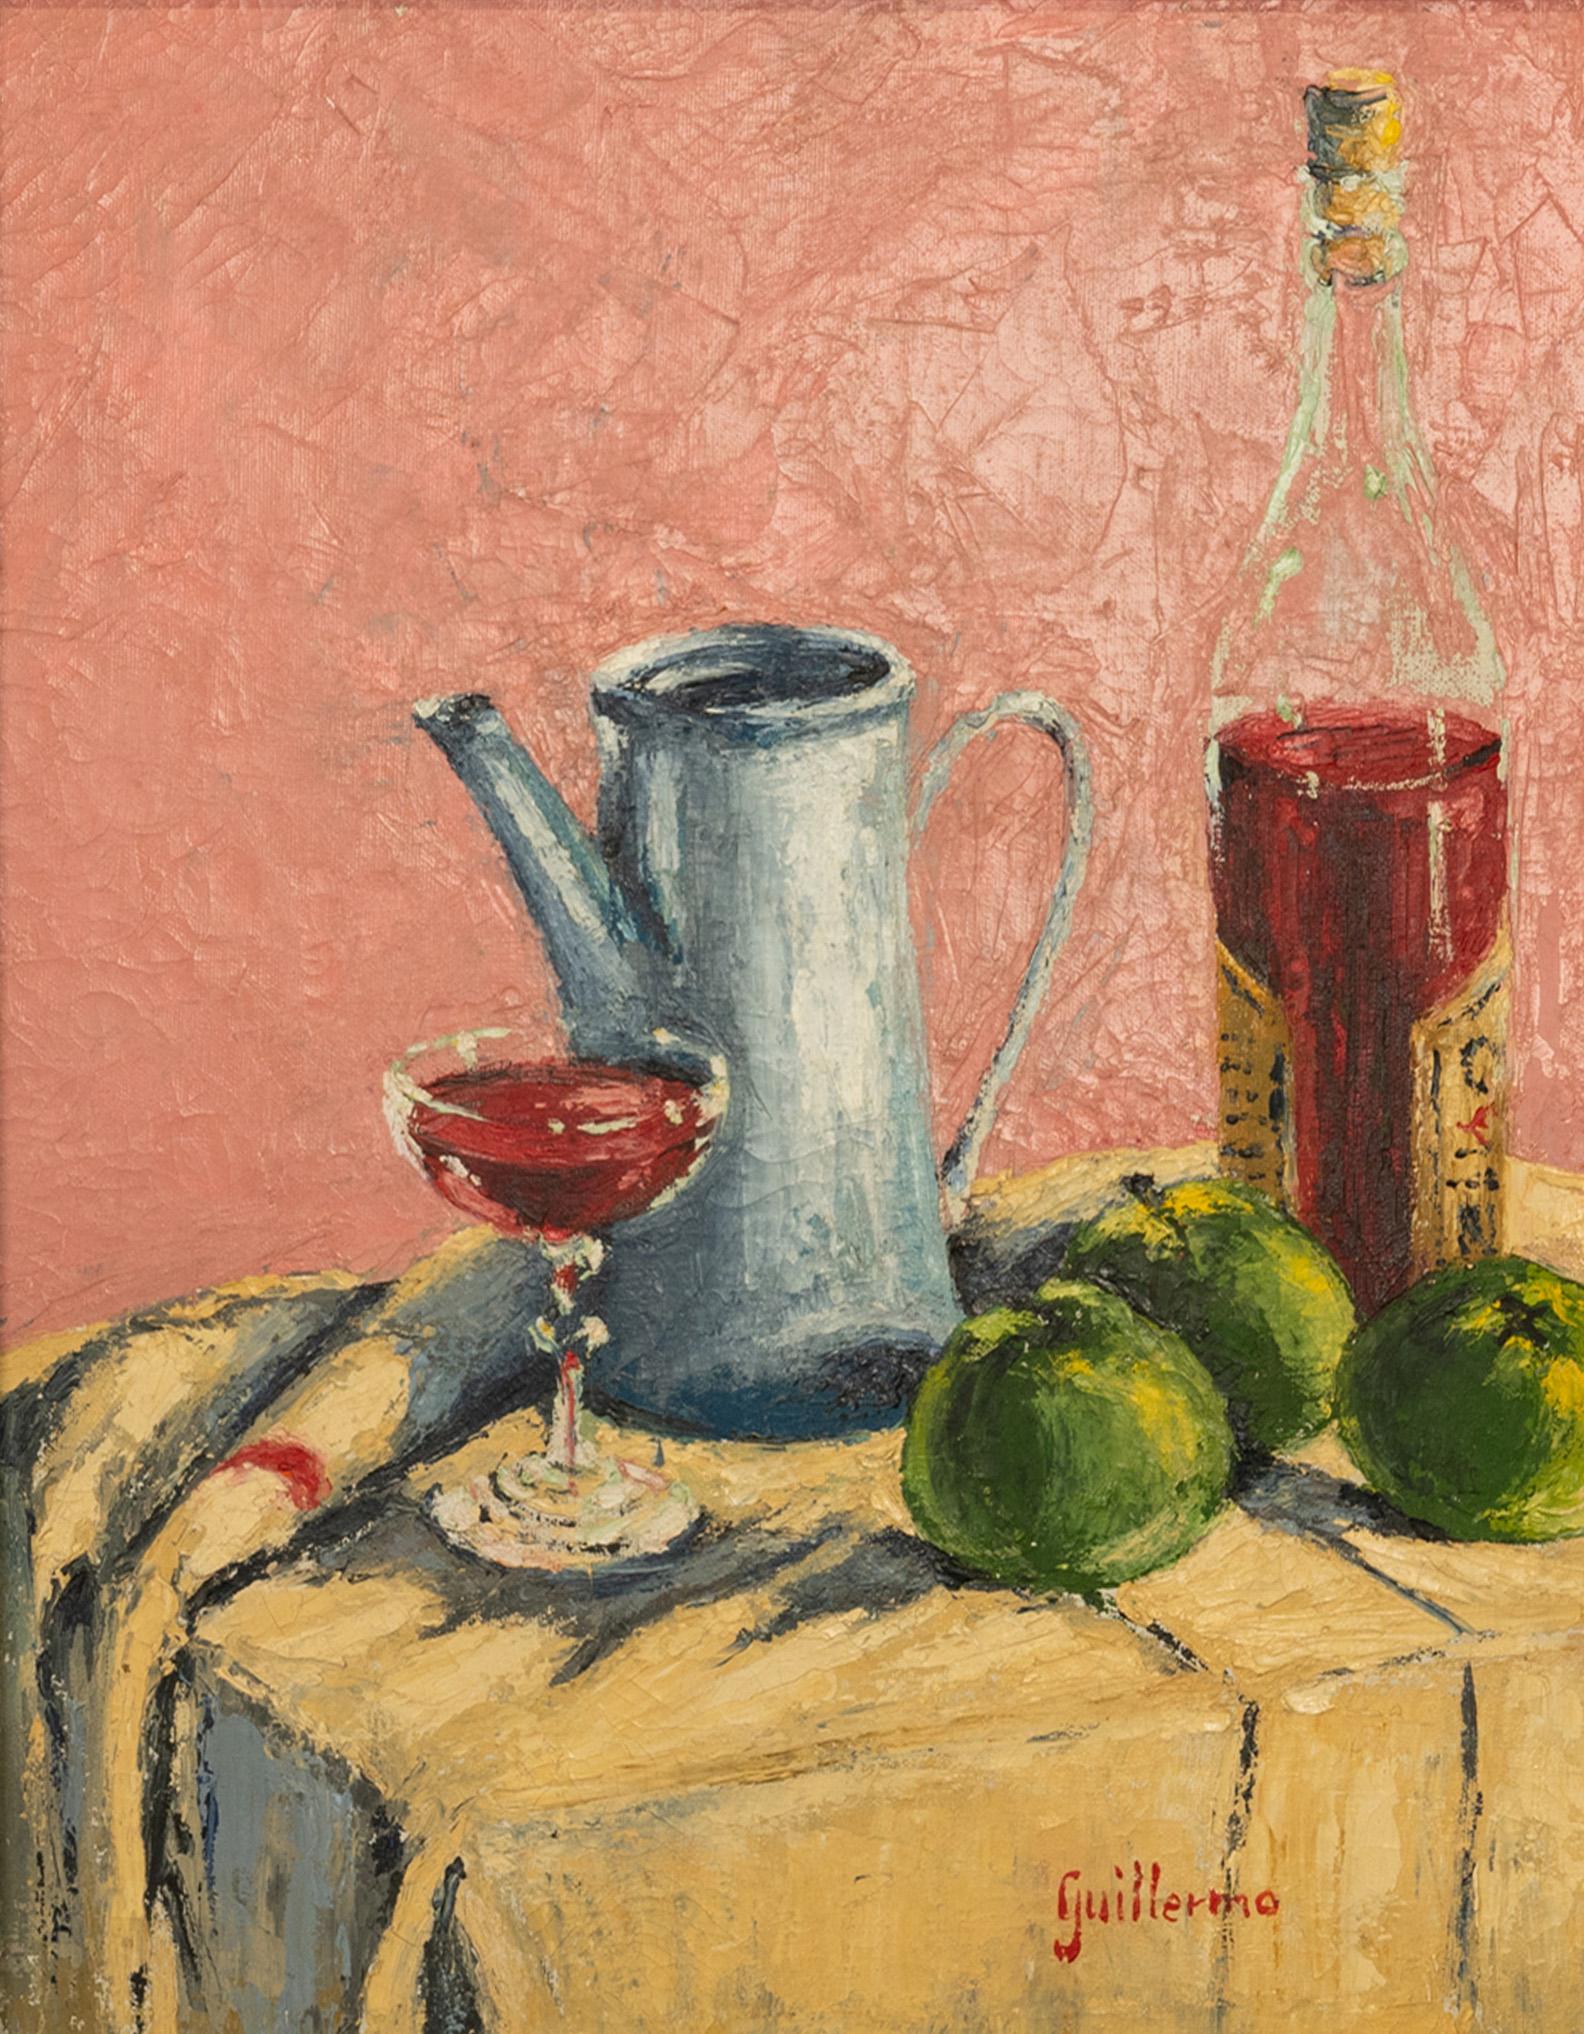  Nature morte moderniste espagnole abstraite impressionniste sur toile à l'huile 1950  - Impressionnisme abstrait Painting par Juan Guillermo